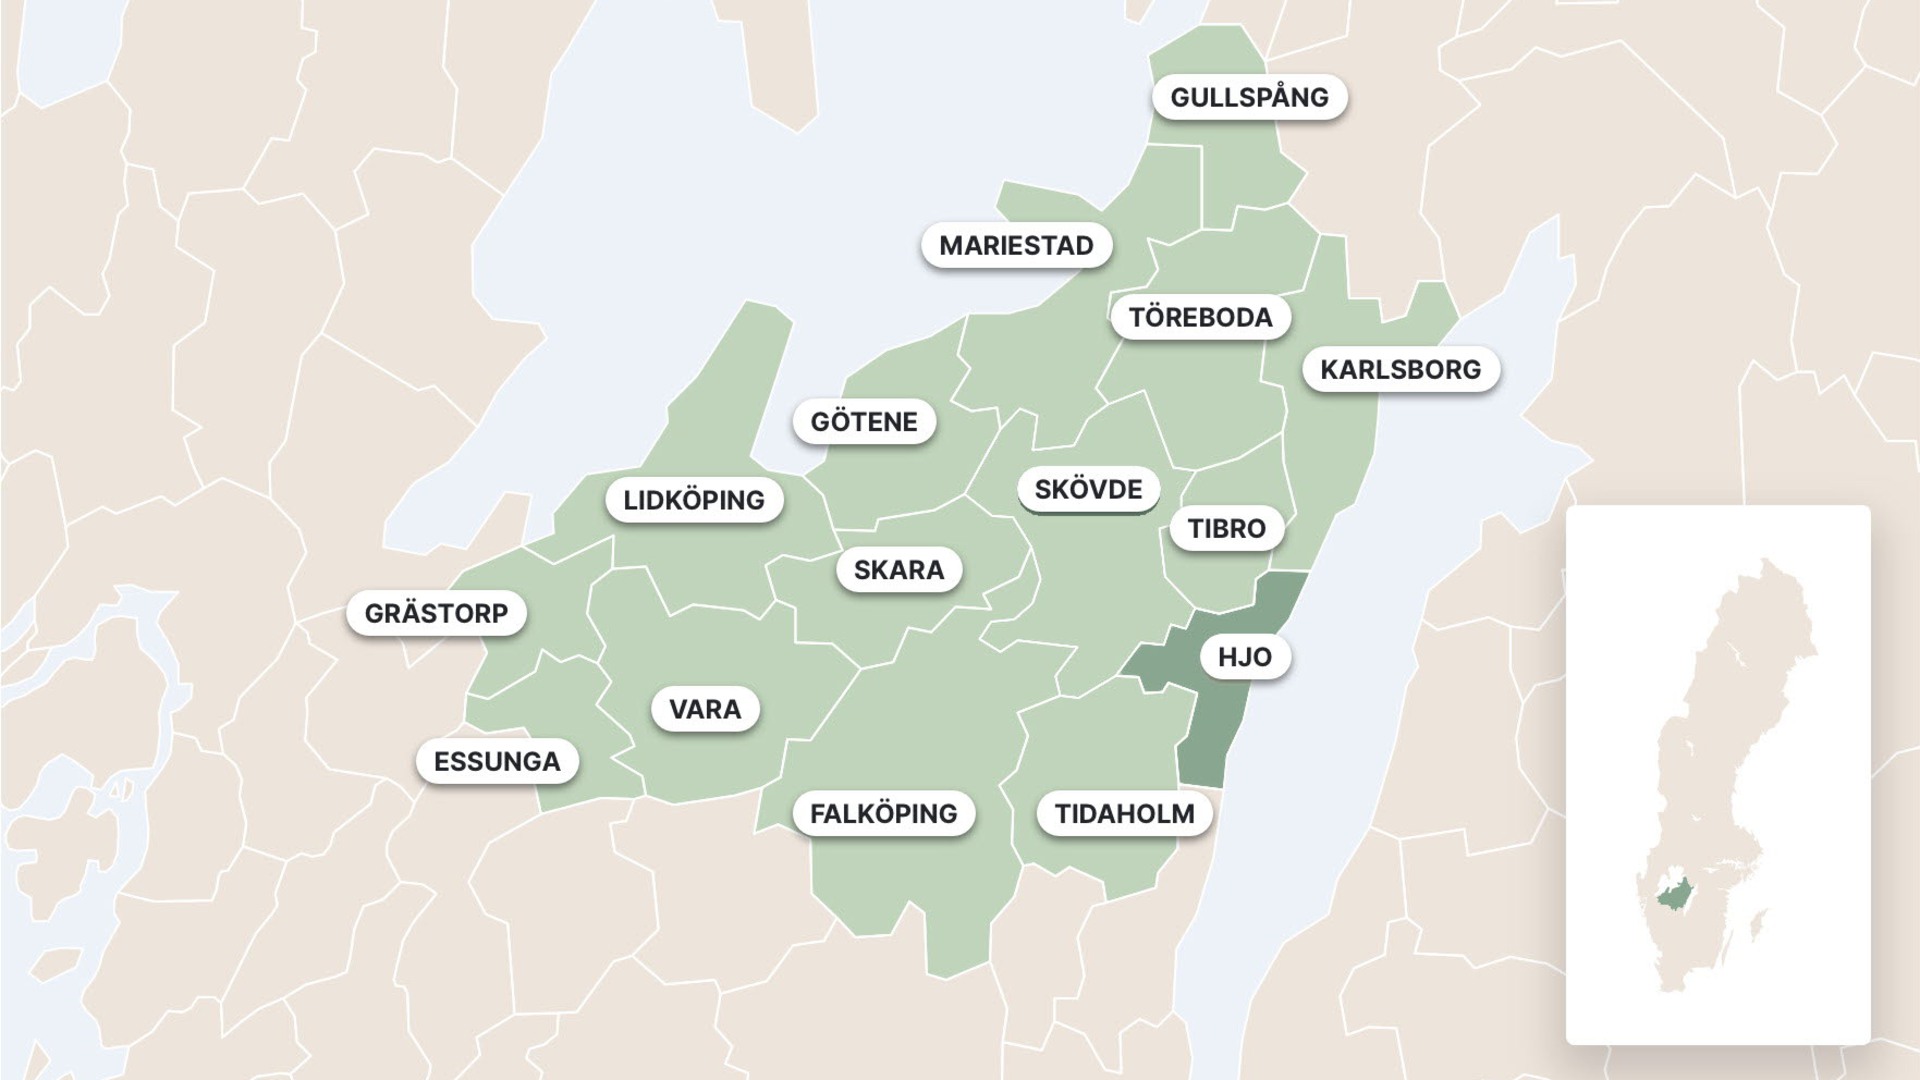 Illustrerad karta som visar kommunerna i Skaraborg, Hjo är utmärkt i mörktgrönt